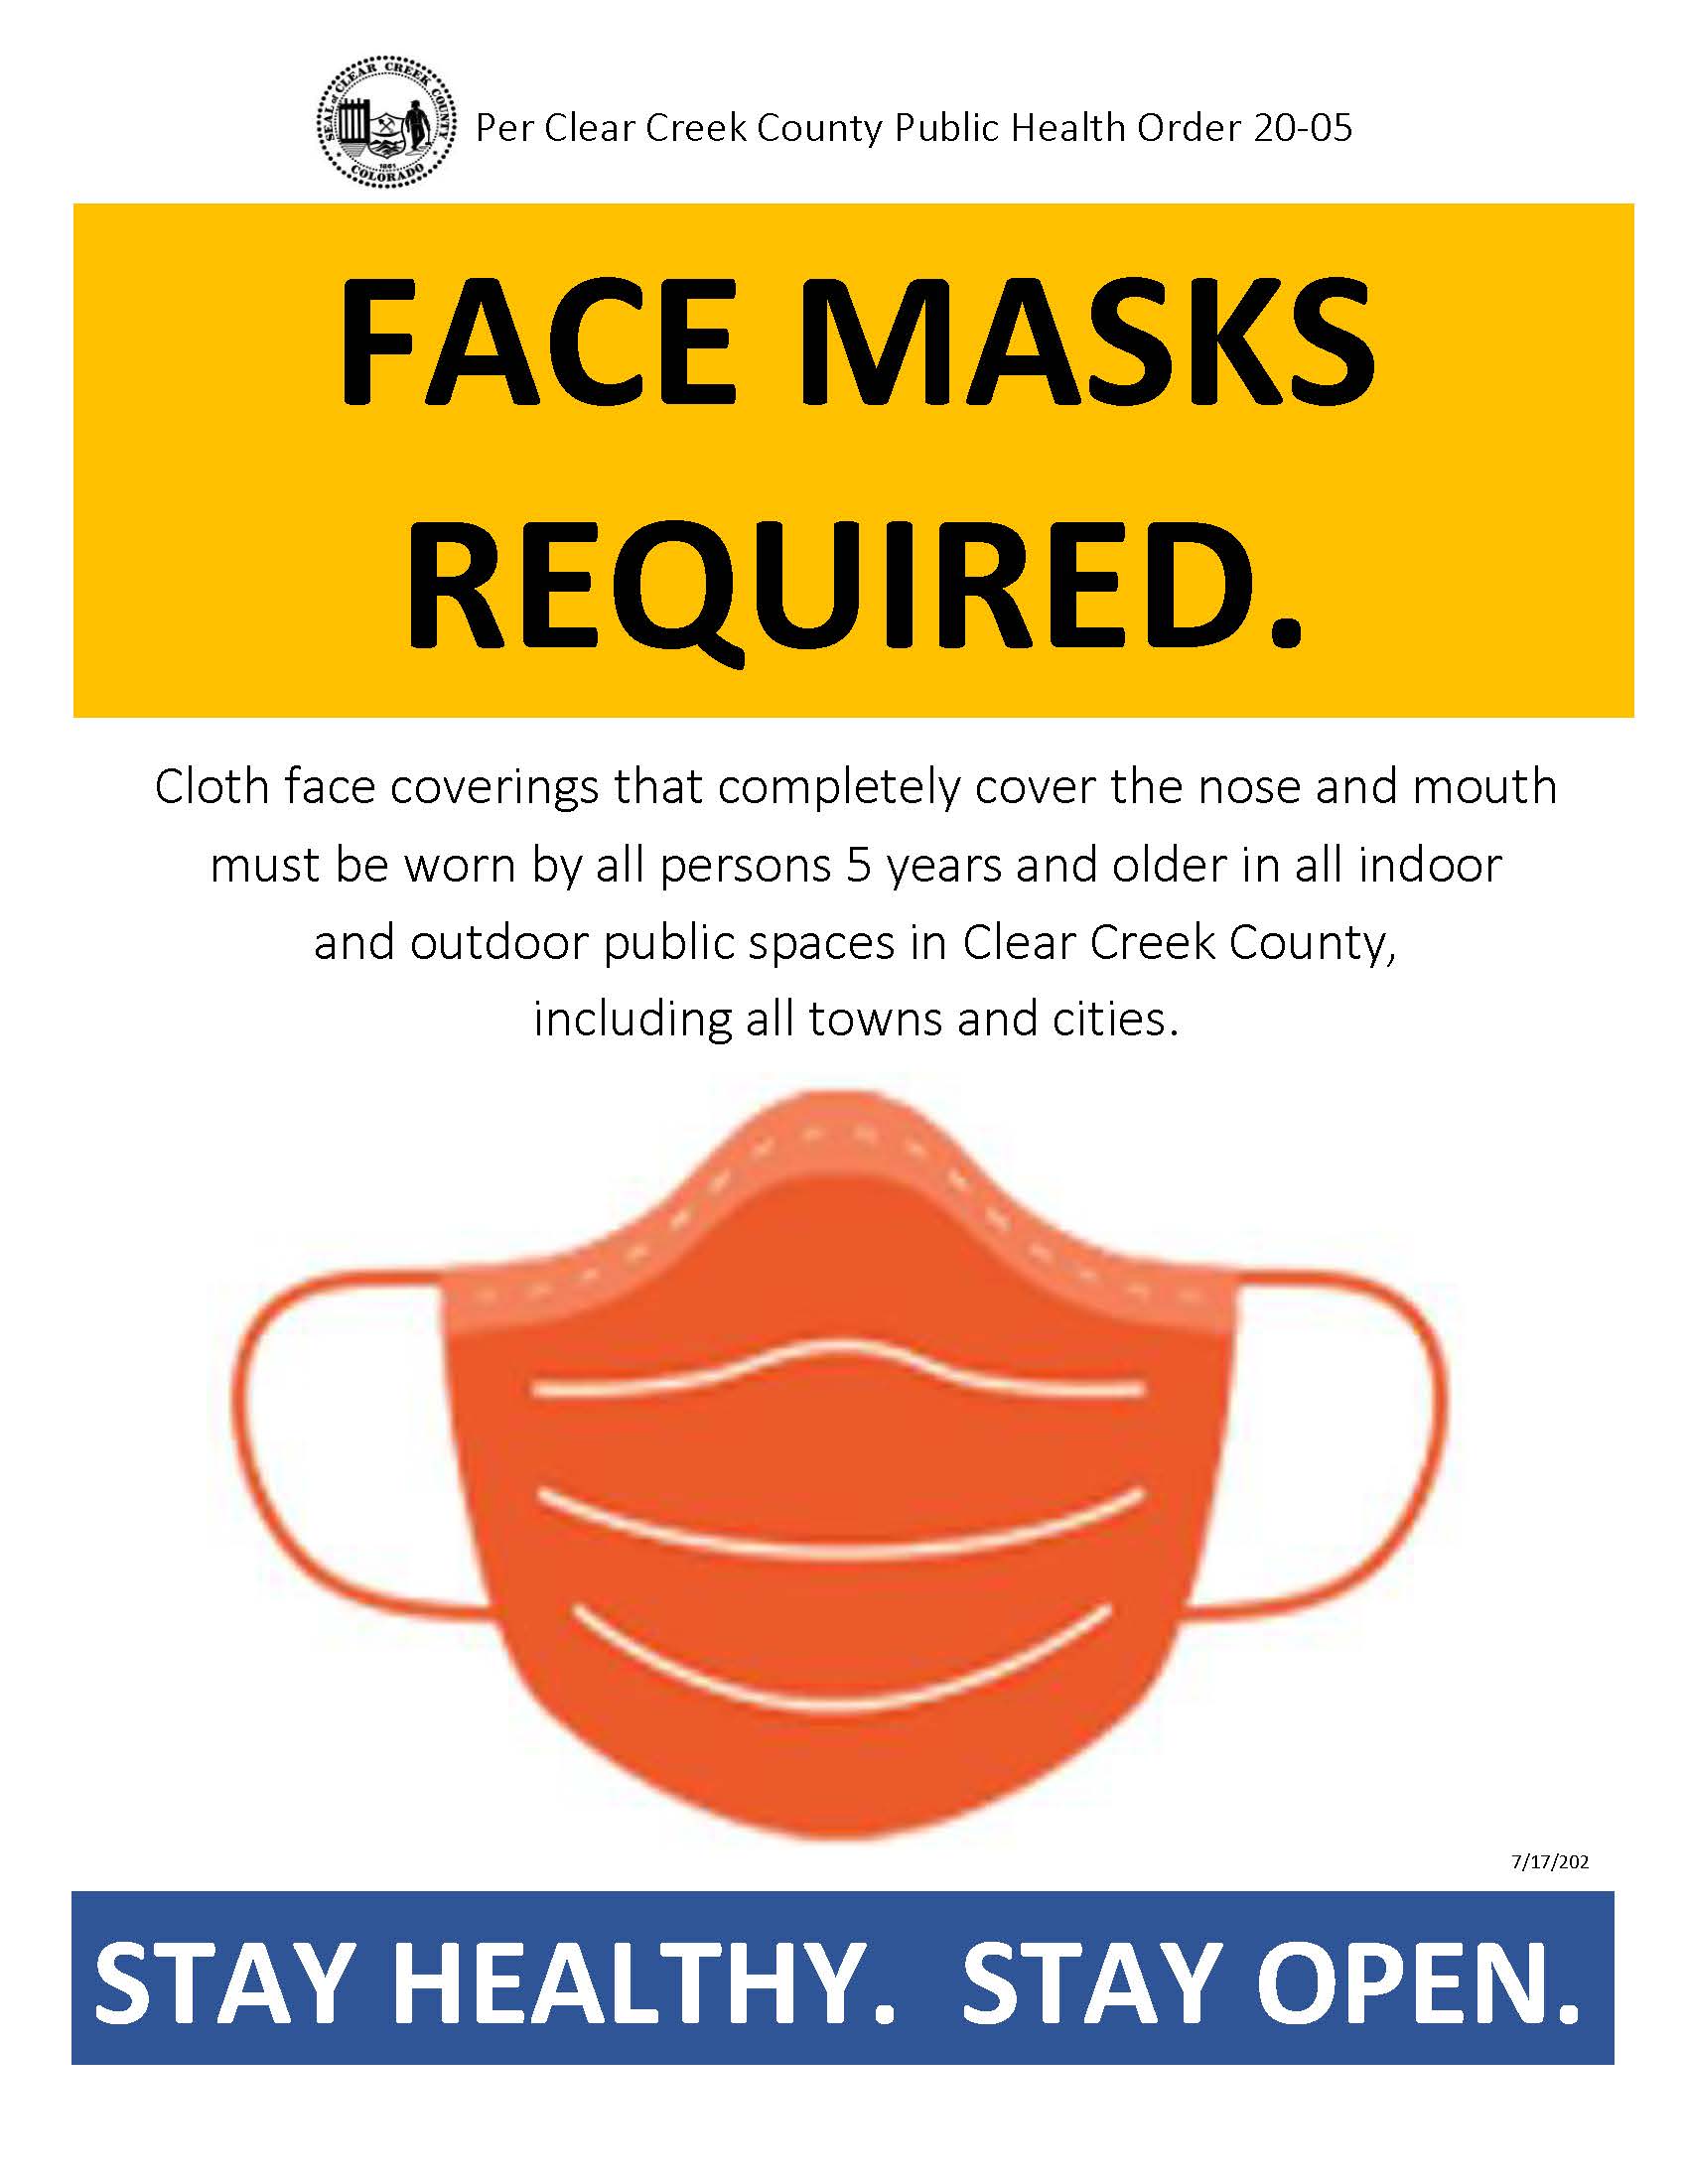 CCC Mask Order Sign 1_July 2020 JPEG